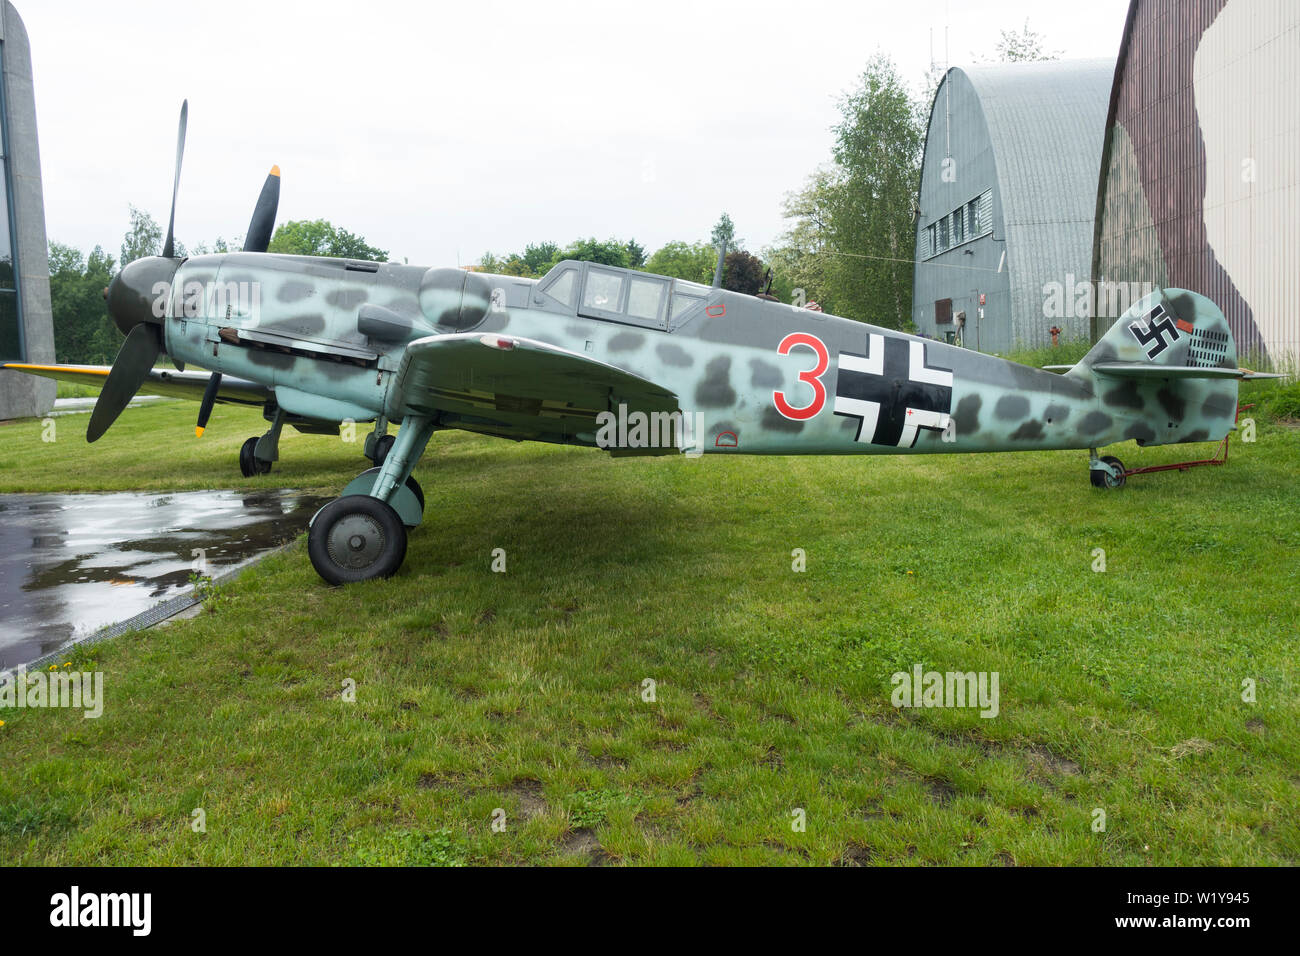 German Messerschmitt Bf 109 Fighter Aircraft built around 1943, Polish Aircraft Museum Krakow, Poland, Europe. Stock Photo